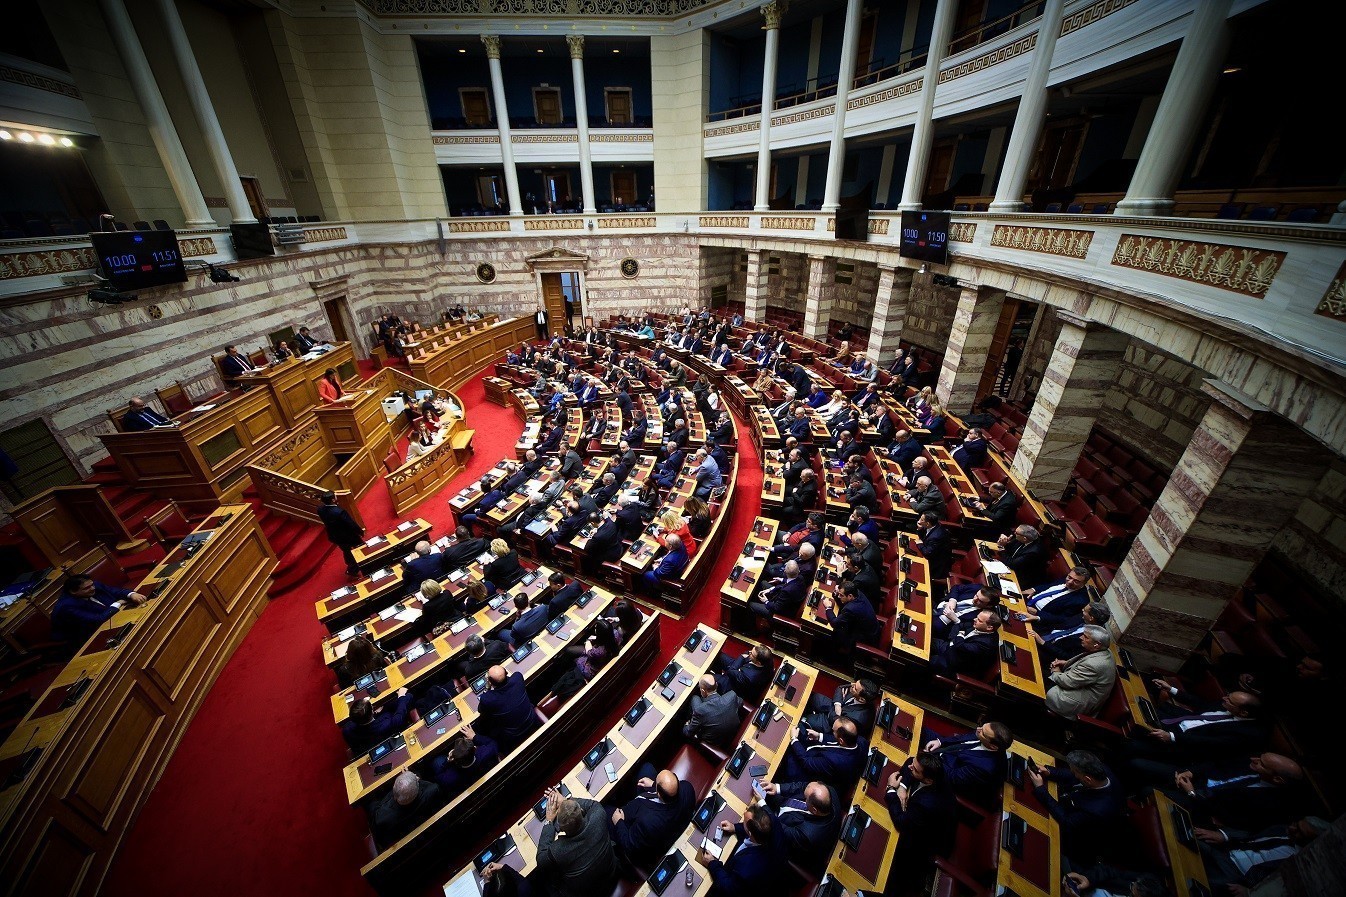 Επιστολική ψήφος: Πέρασε με 158 ψήφους το νομοσχέδιο για συμμετοχή στις ευρωεκλογές